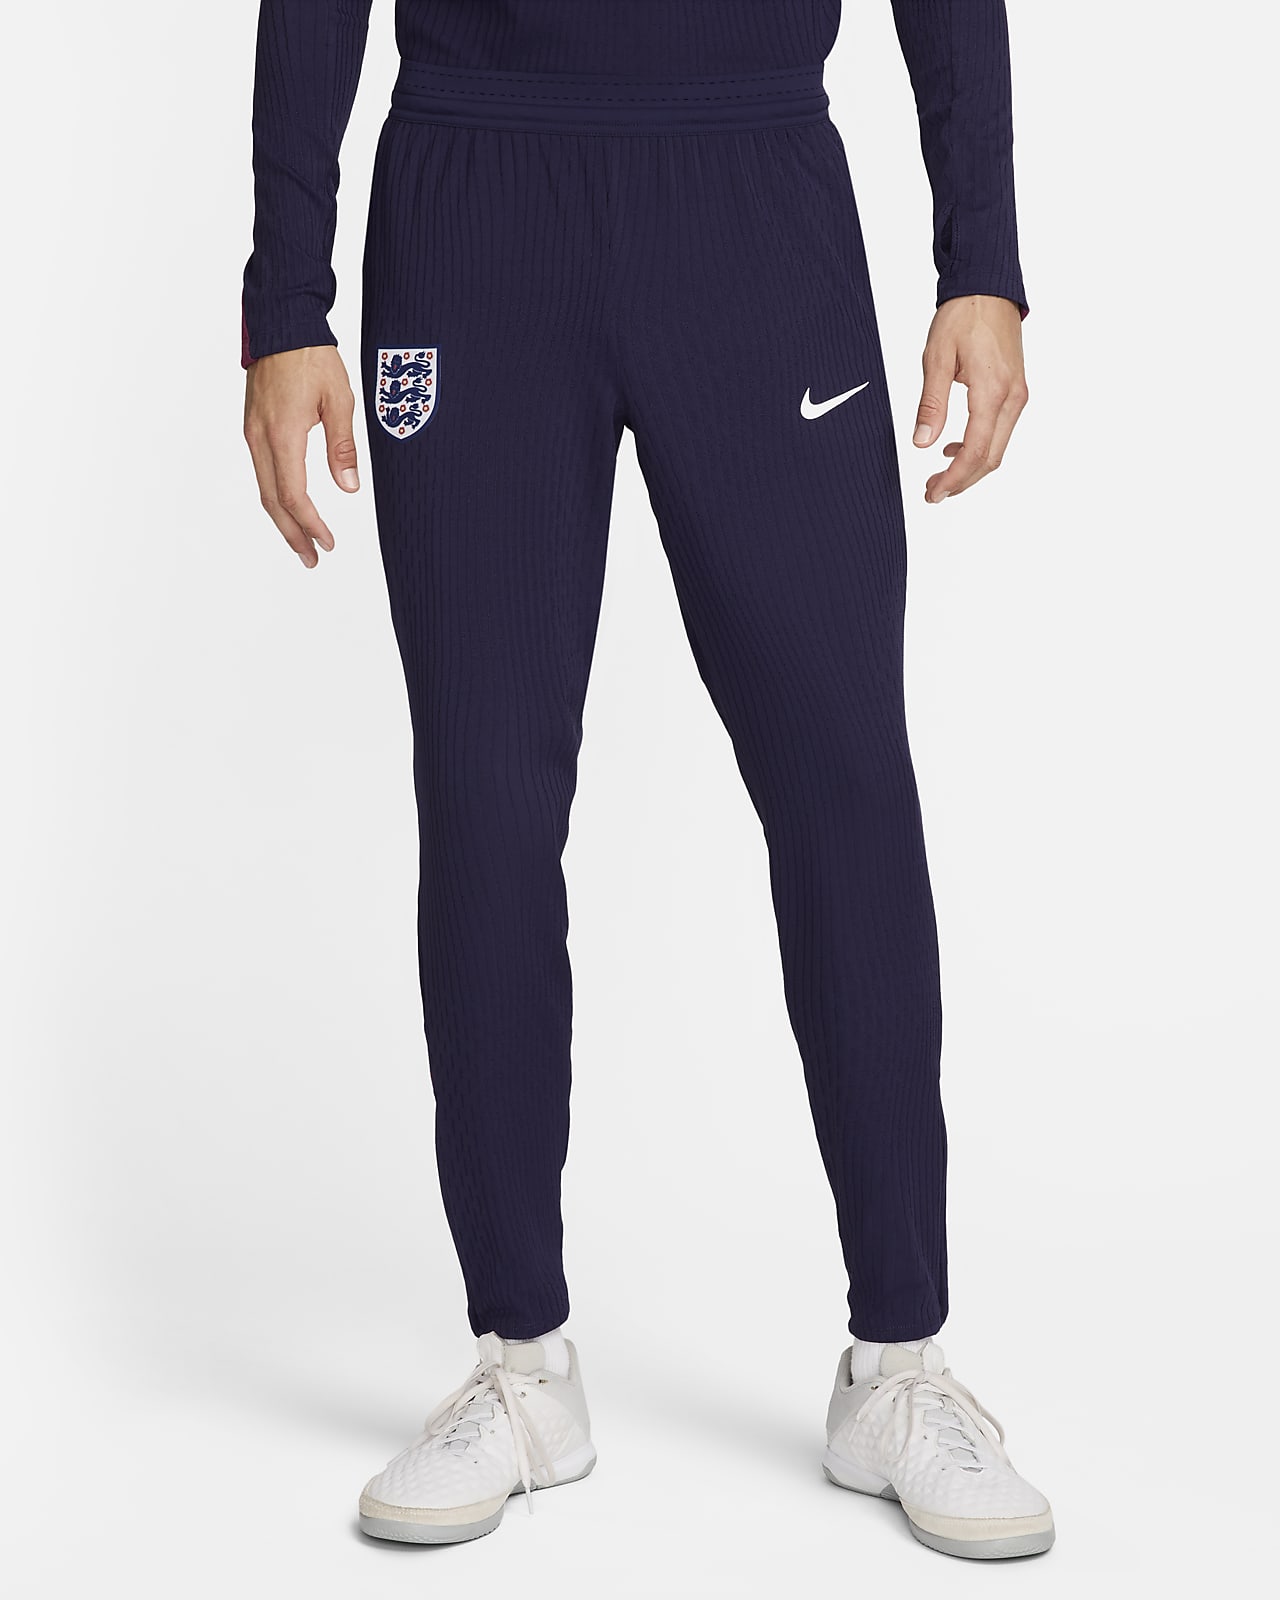 Ανδρικό ποδοσφαιρικό πλεκτό παντελόνι Nike Dri-FIT ADV Αγγλία Strike Elite